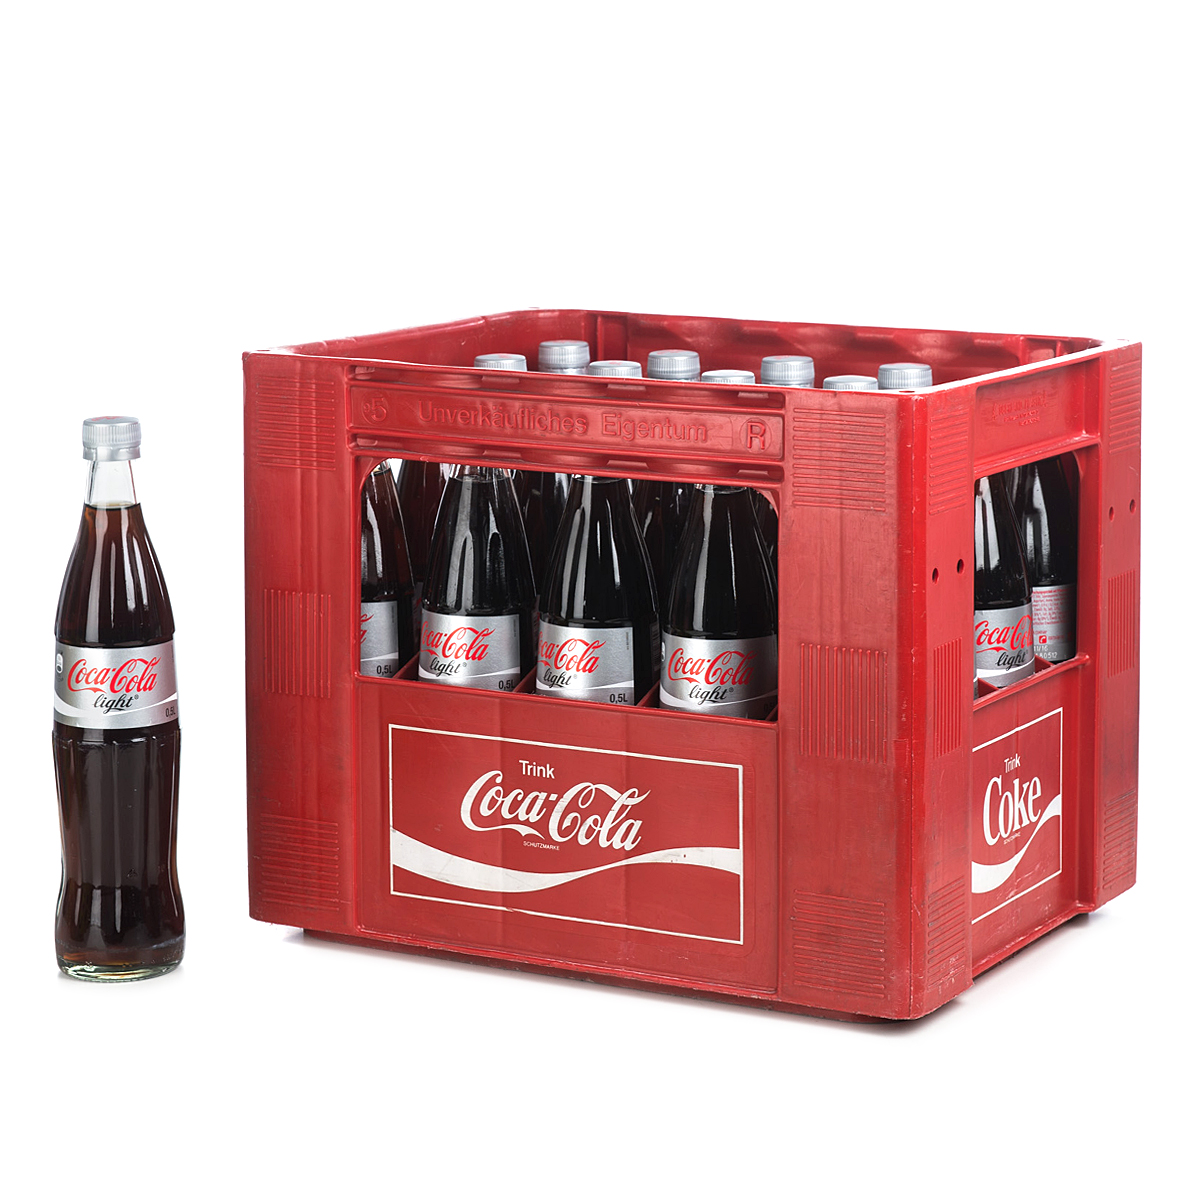 Coca-Cola light 20 x 0,5l online bestellen | getraenkedienst.com